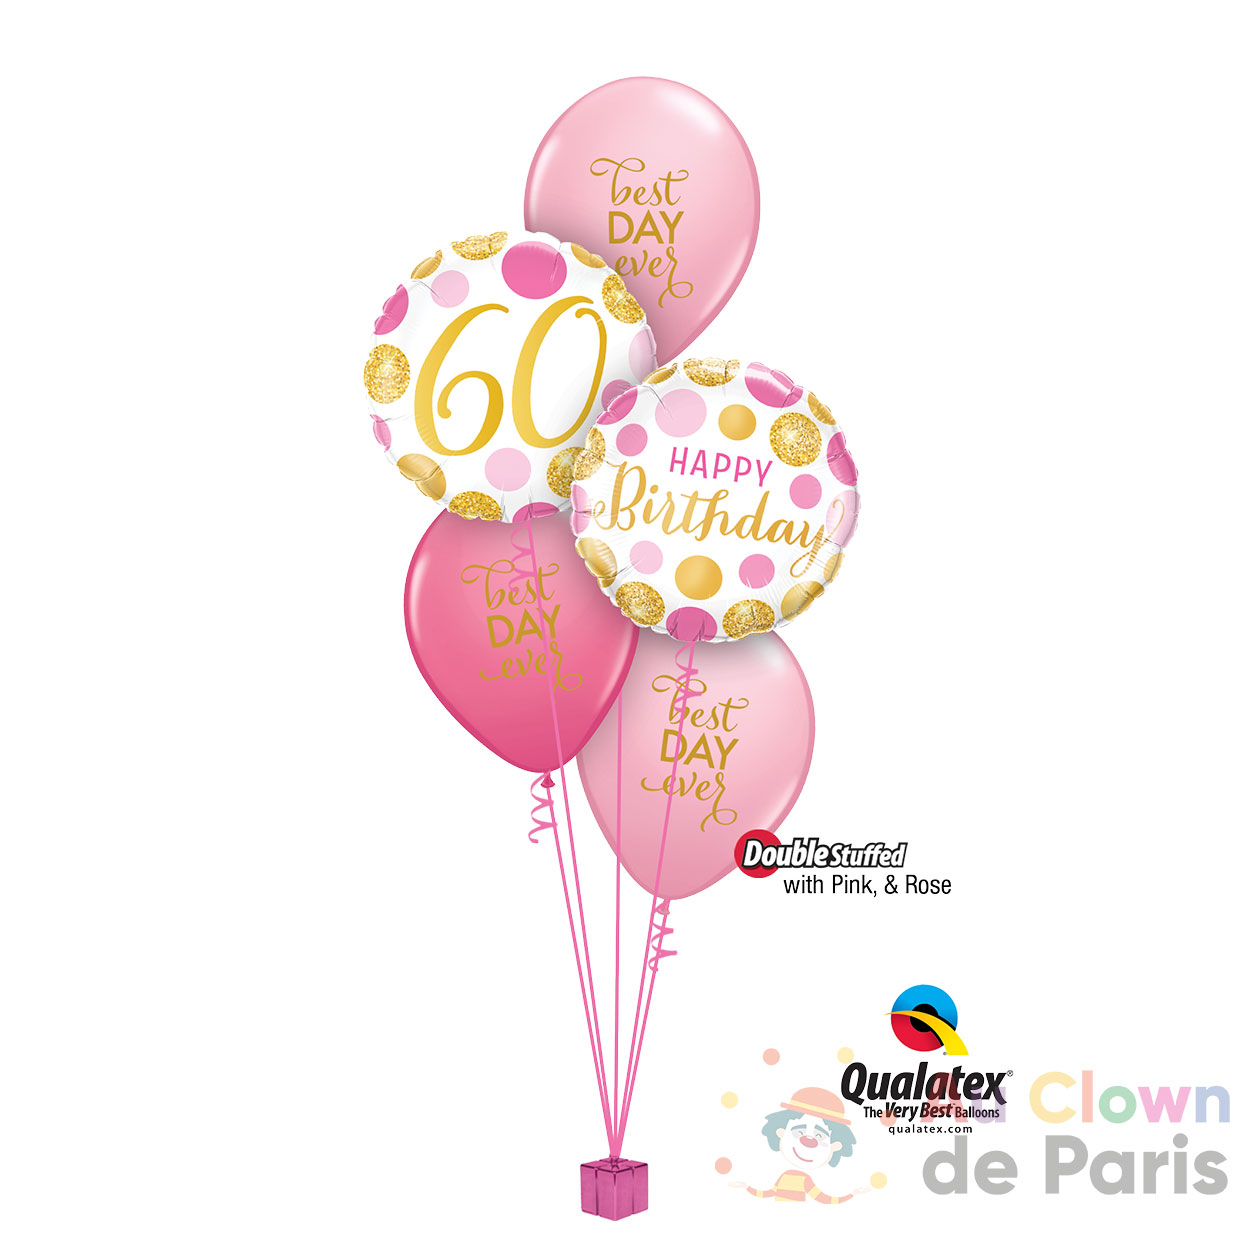 Decoration Anniversaire 60 Ans Homme Femme, Ballon 60 Ans